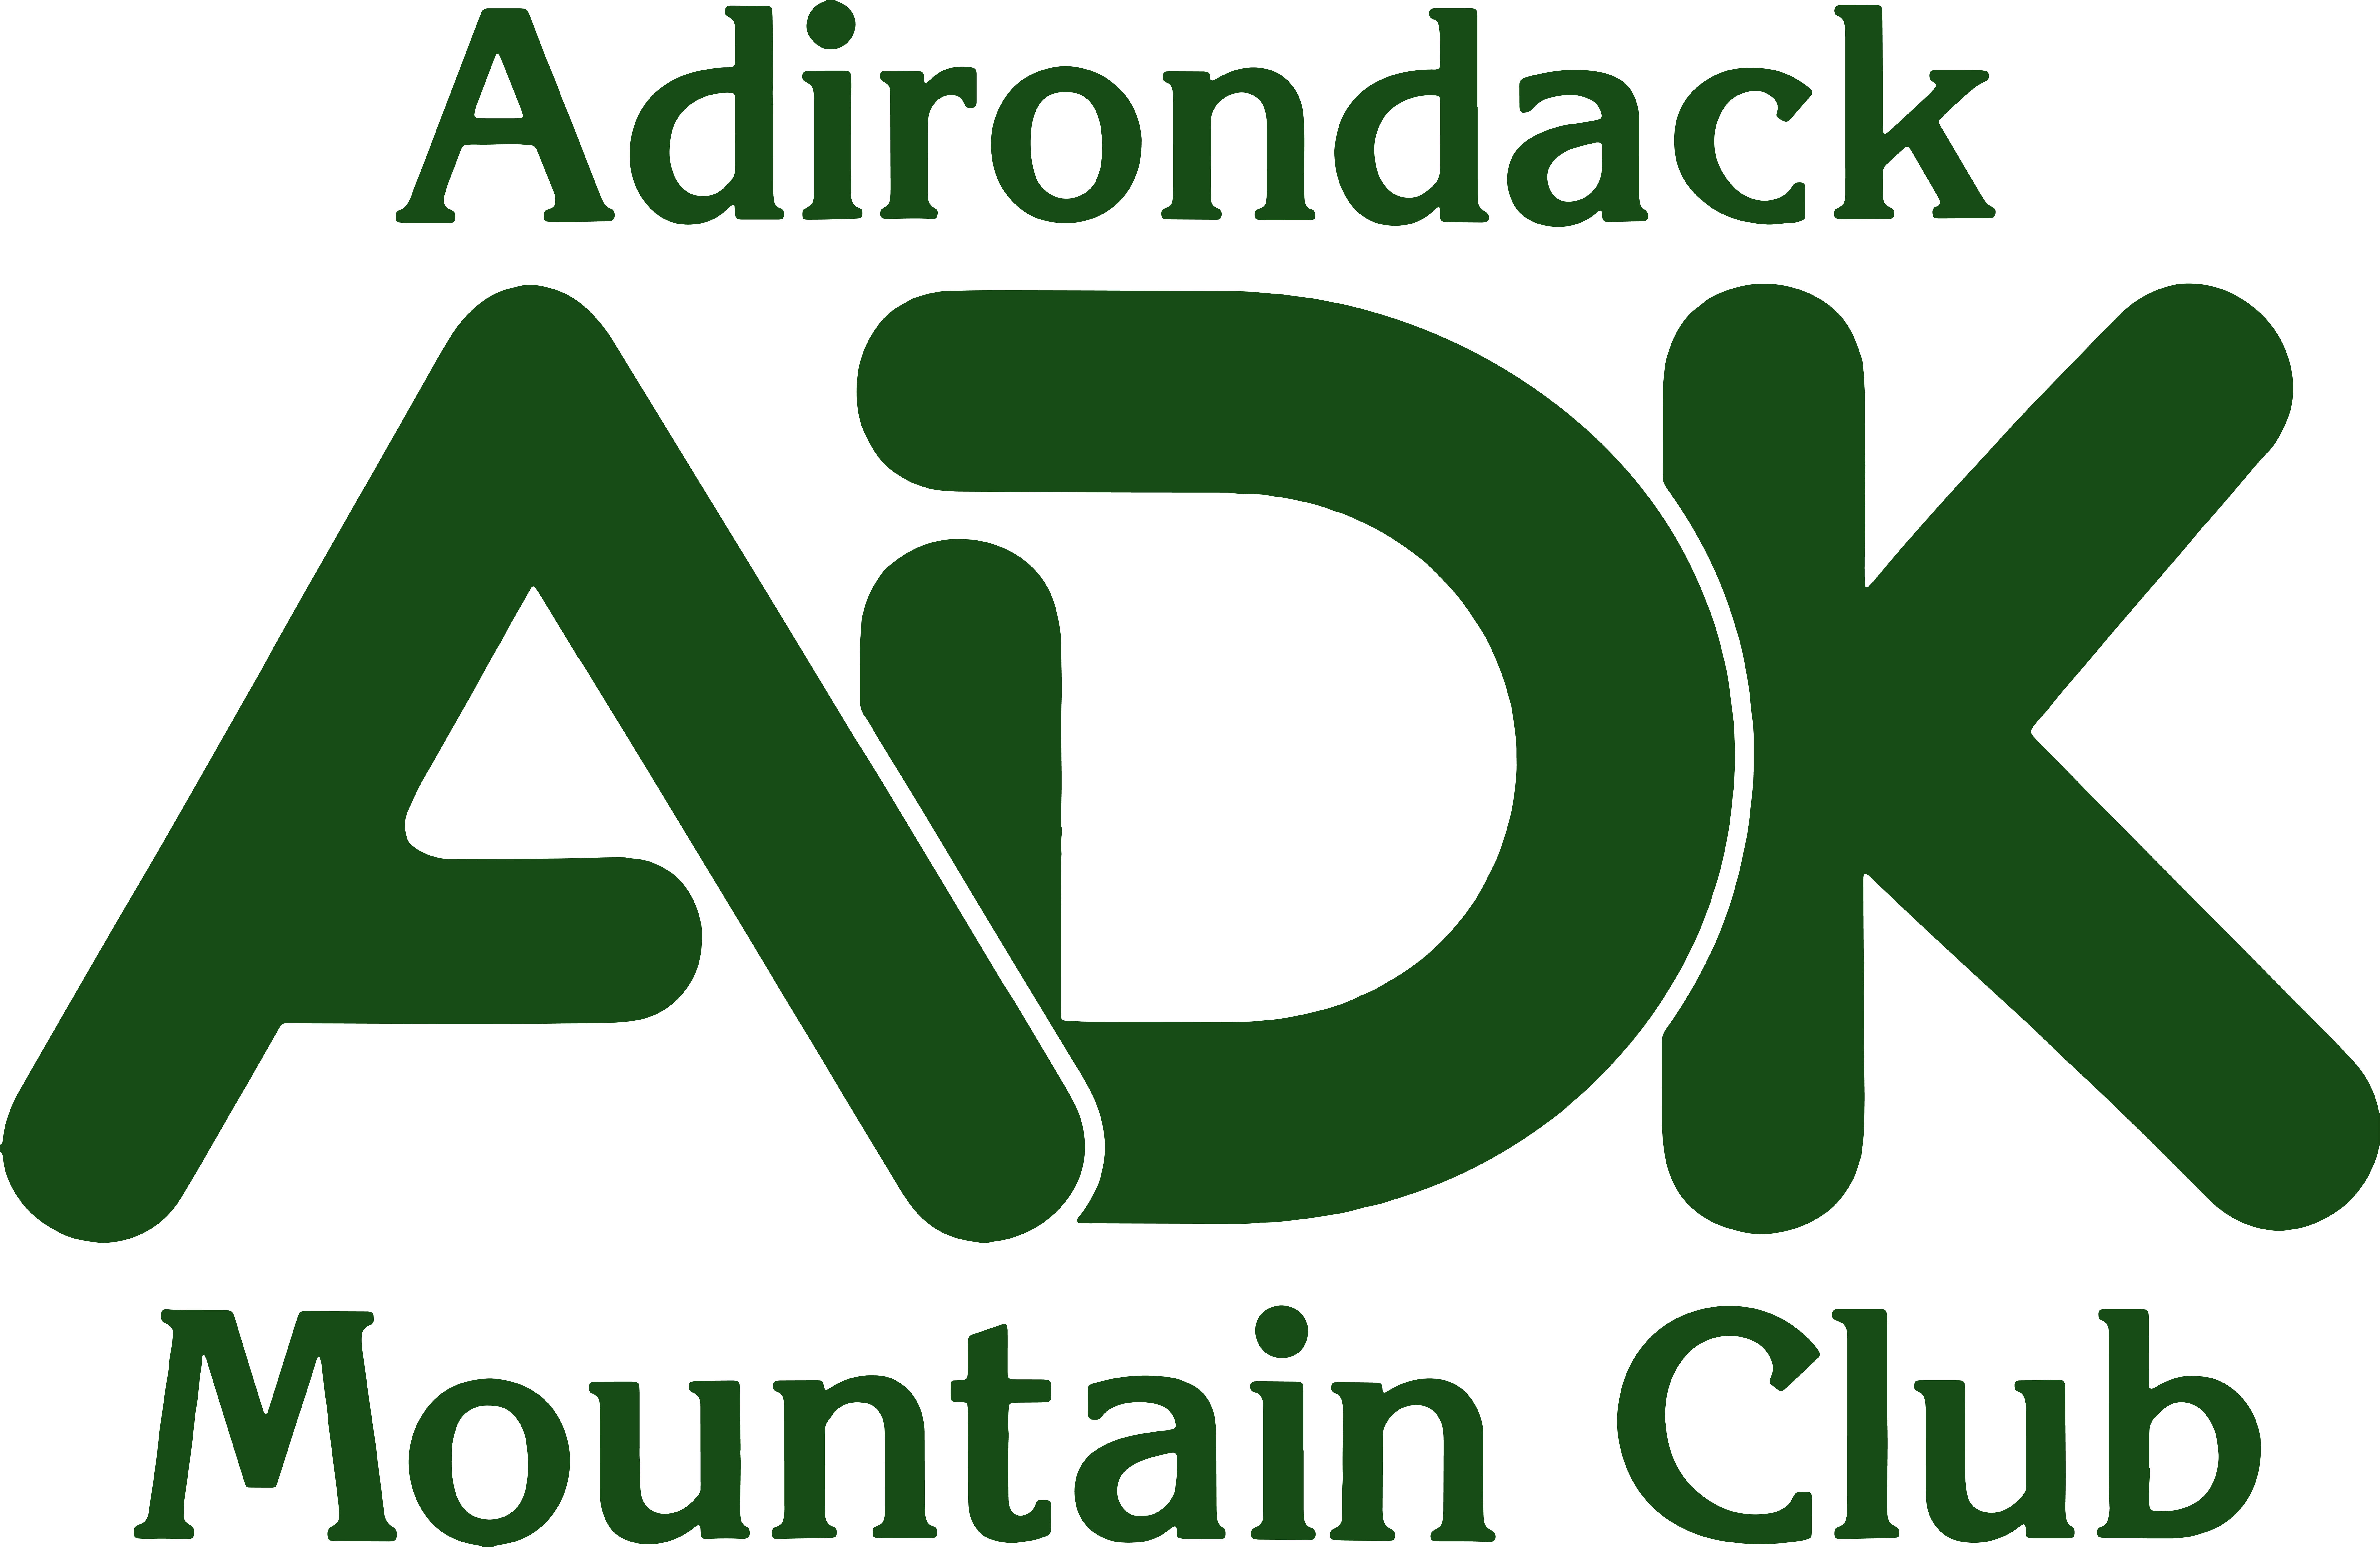 Adirondack Mountain Club logo